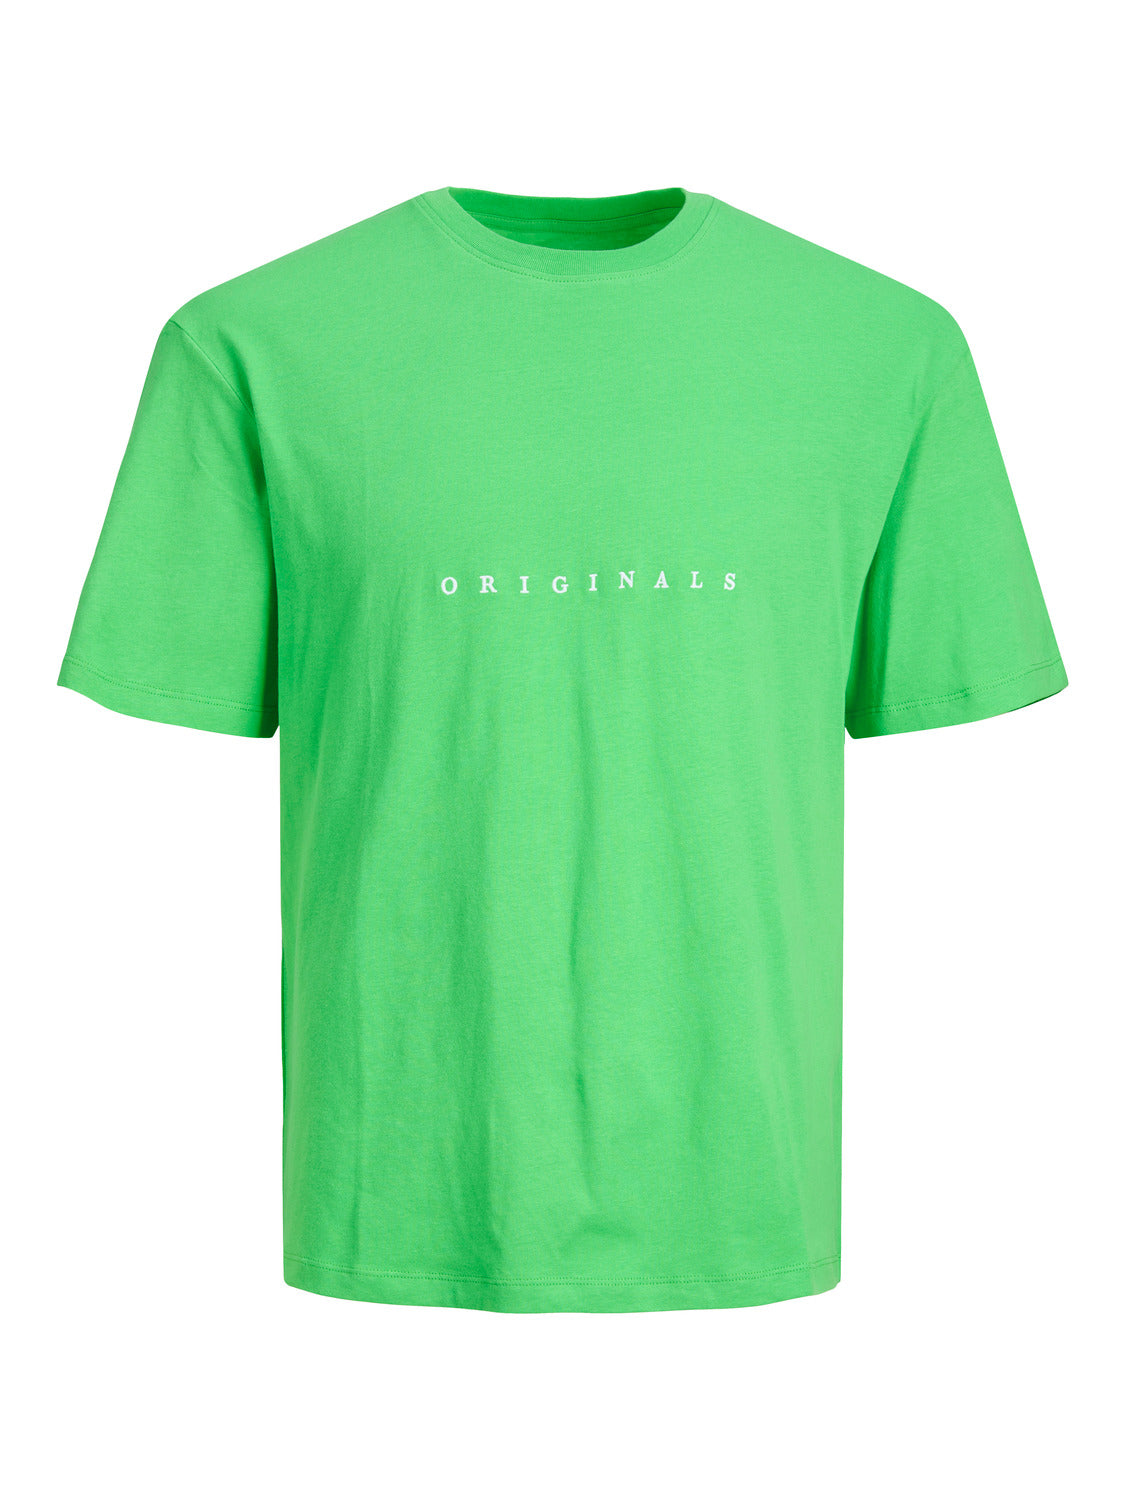 Camiseta de manga corta verde - JORCOPENHAGEN TEE SS CREW NECK NOOS